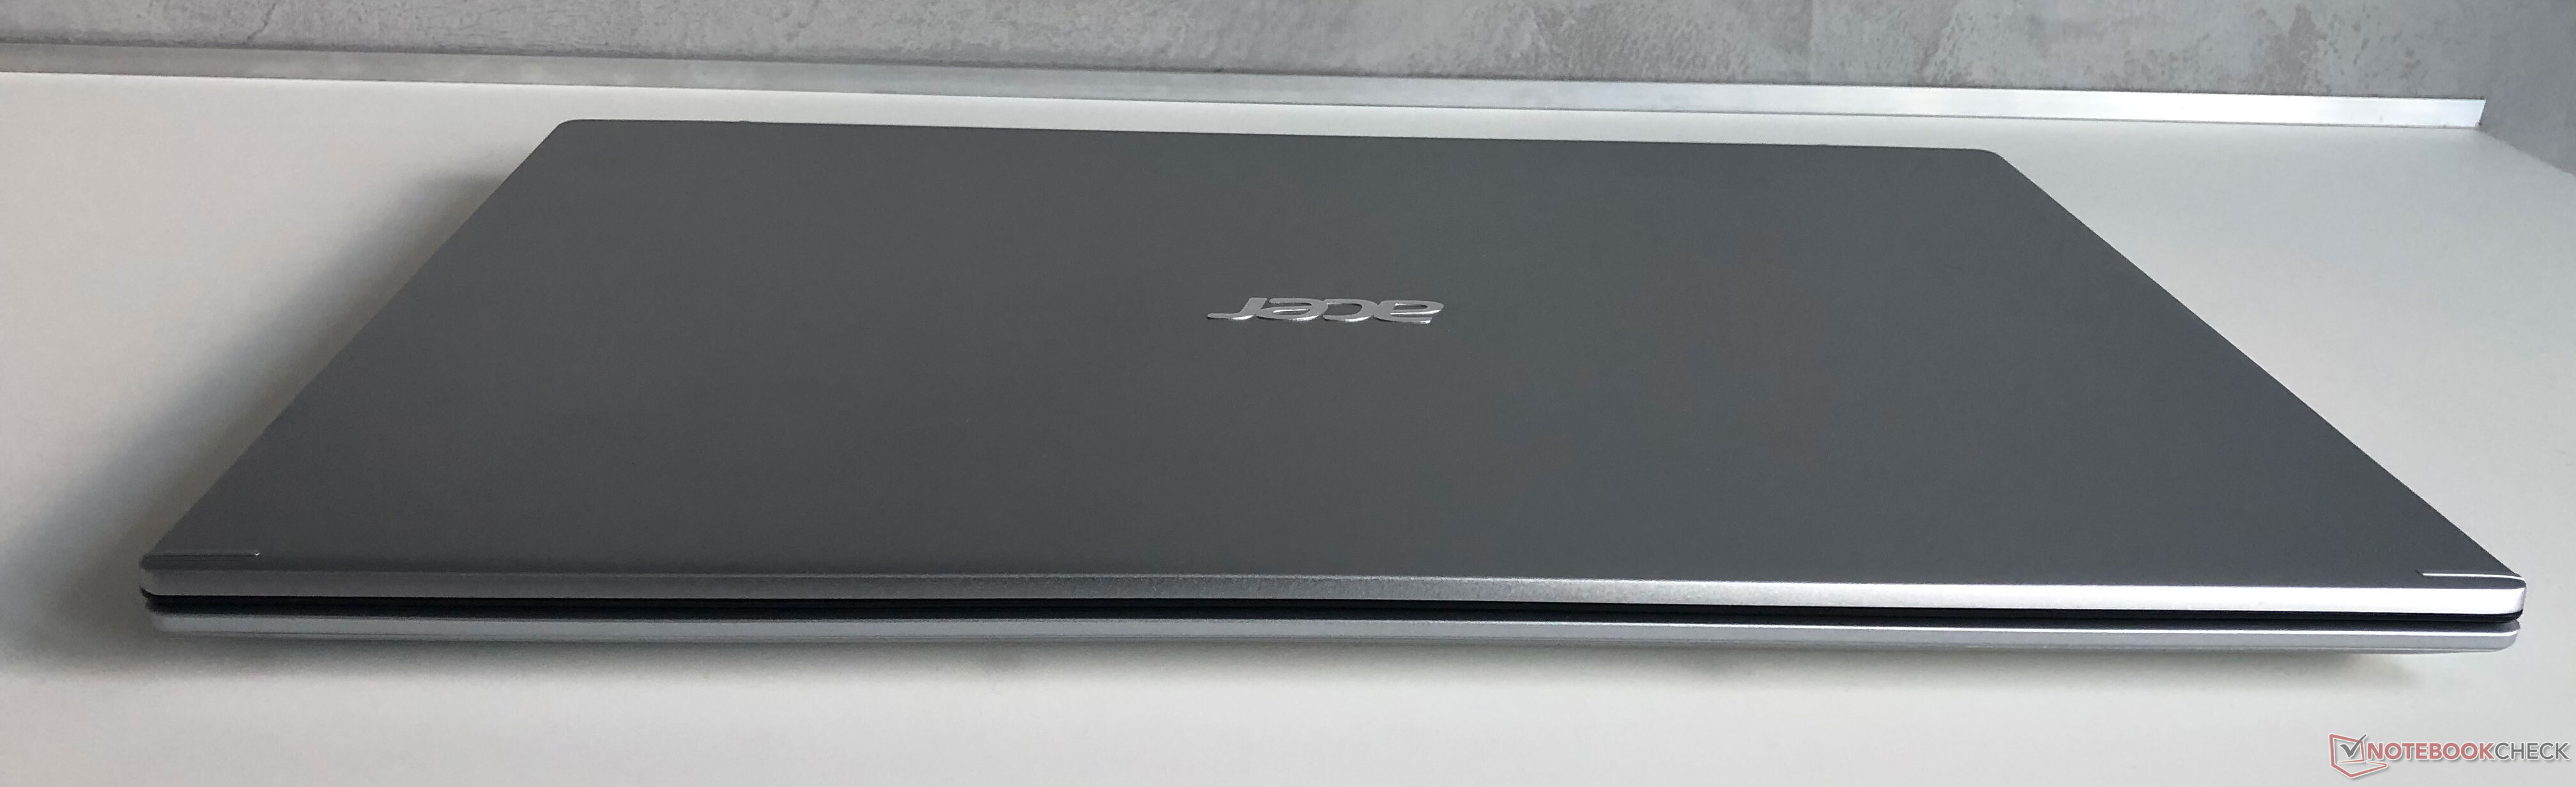 Купить Ноутбук Acer 17 Дюймов